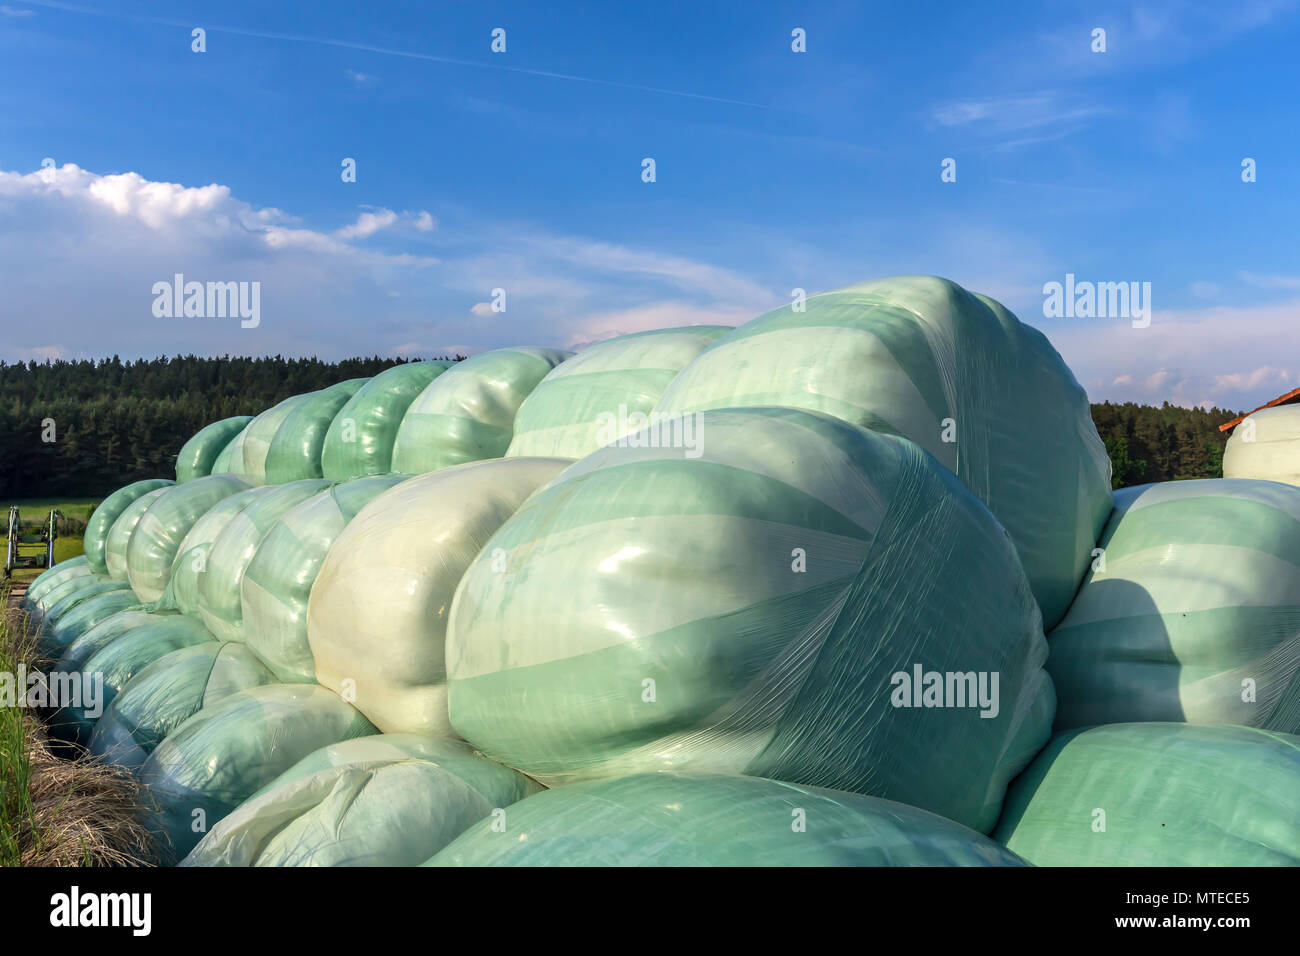 Silo Ballen in Folie eingewickelt, Bayern, Deutschland Stockfoto